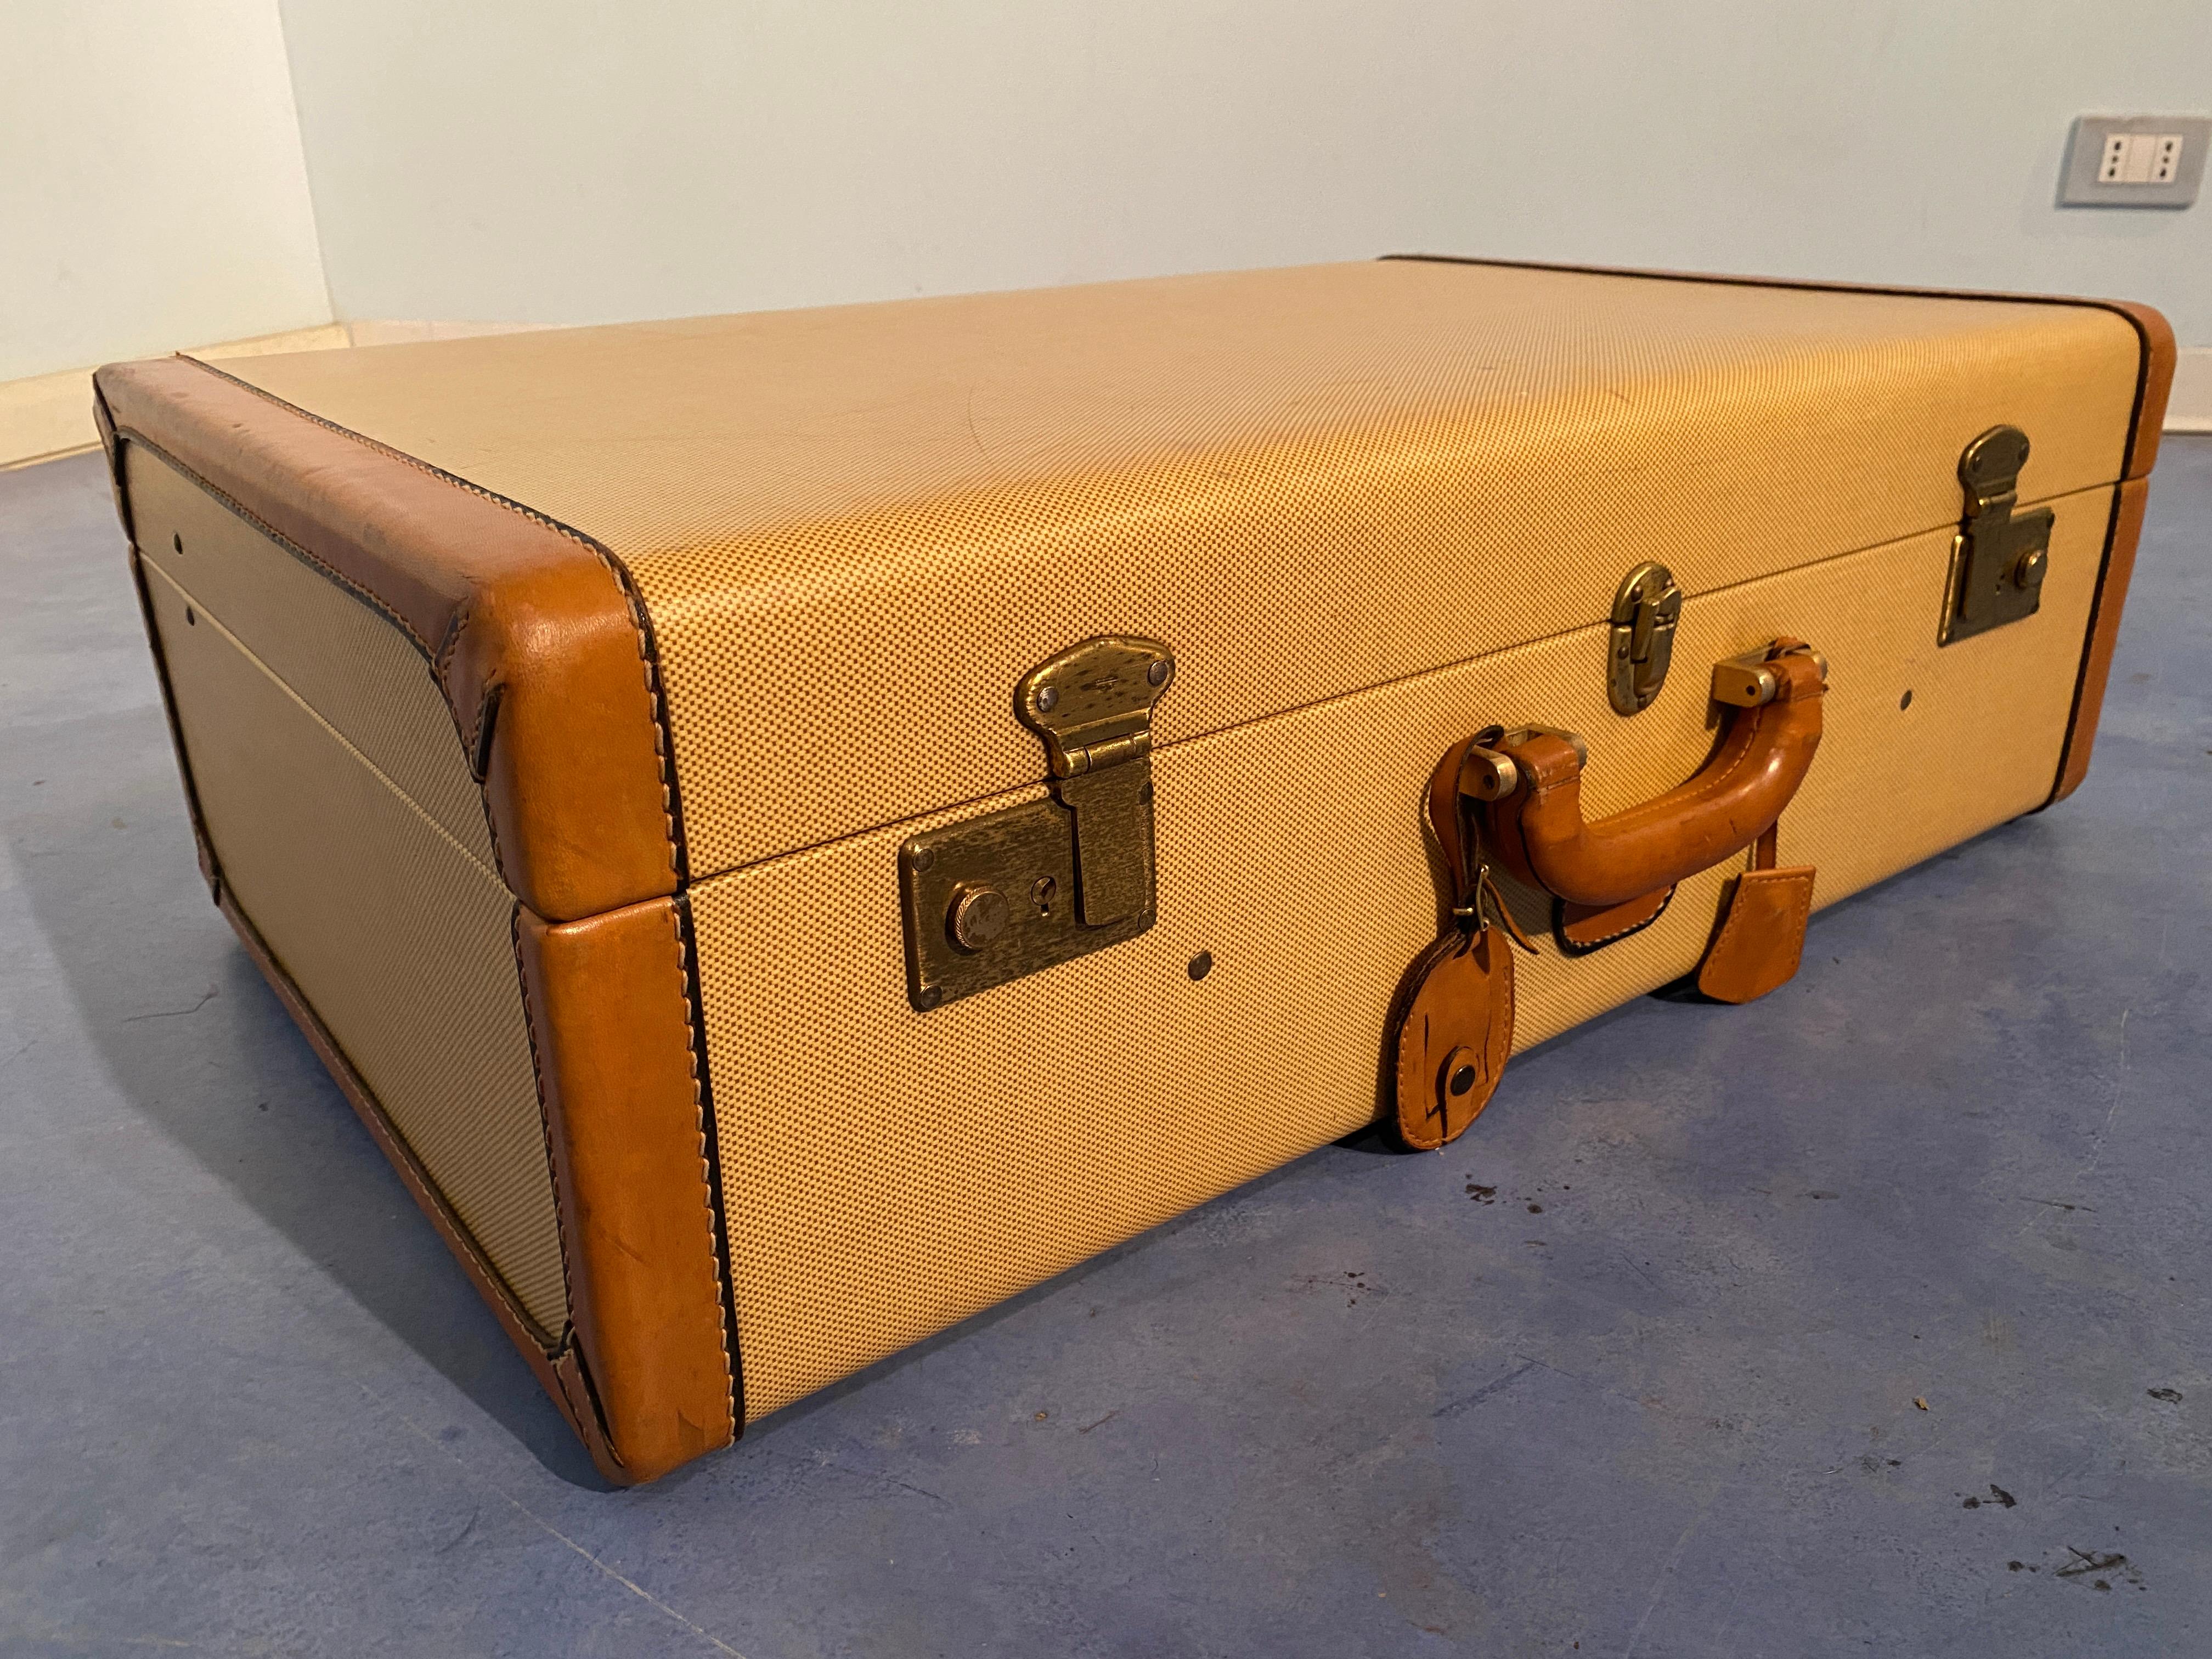 Belle valise italienne datant de 1960. Très spécial en tant qu'objet de collection ou en tant que meuble. La valise est en très bon état, et elle est entièrement d'origine. Il peut encore être utilisé aujourd'hui. Les serrures d'origine fonctionnent